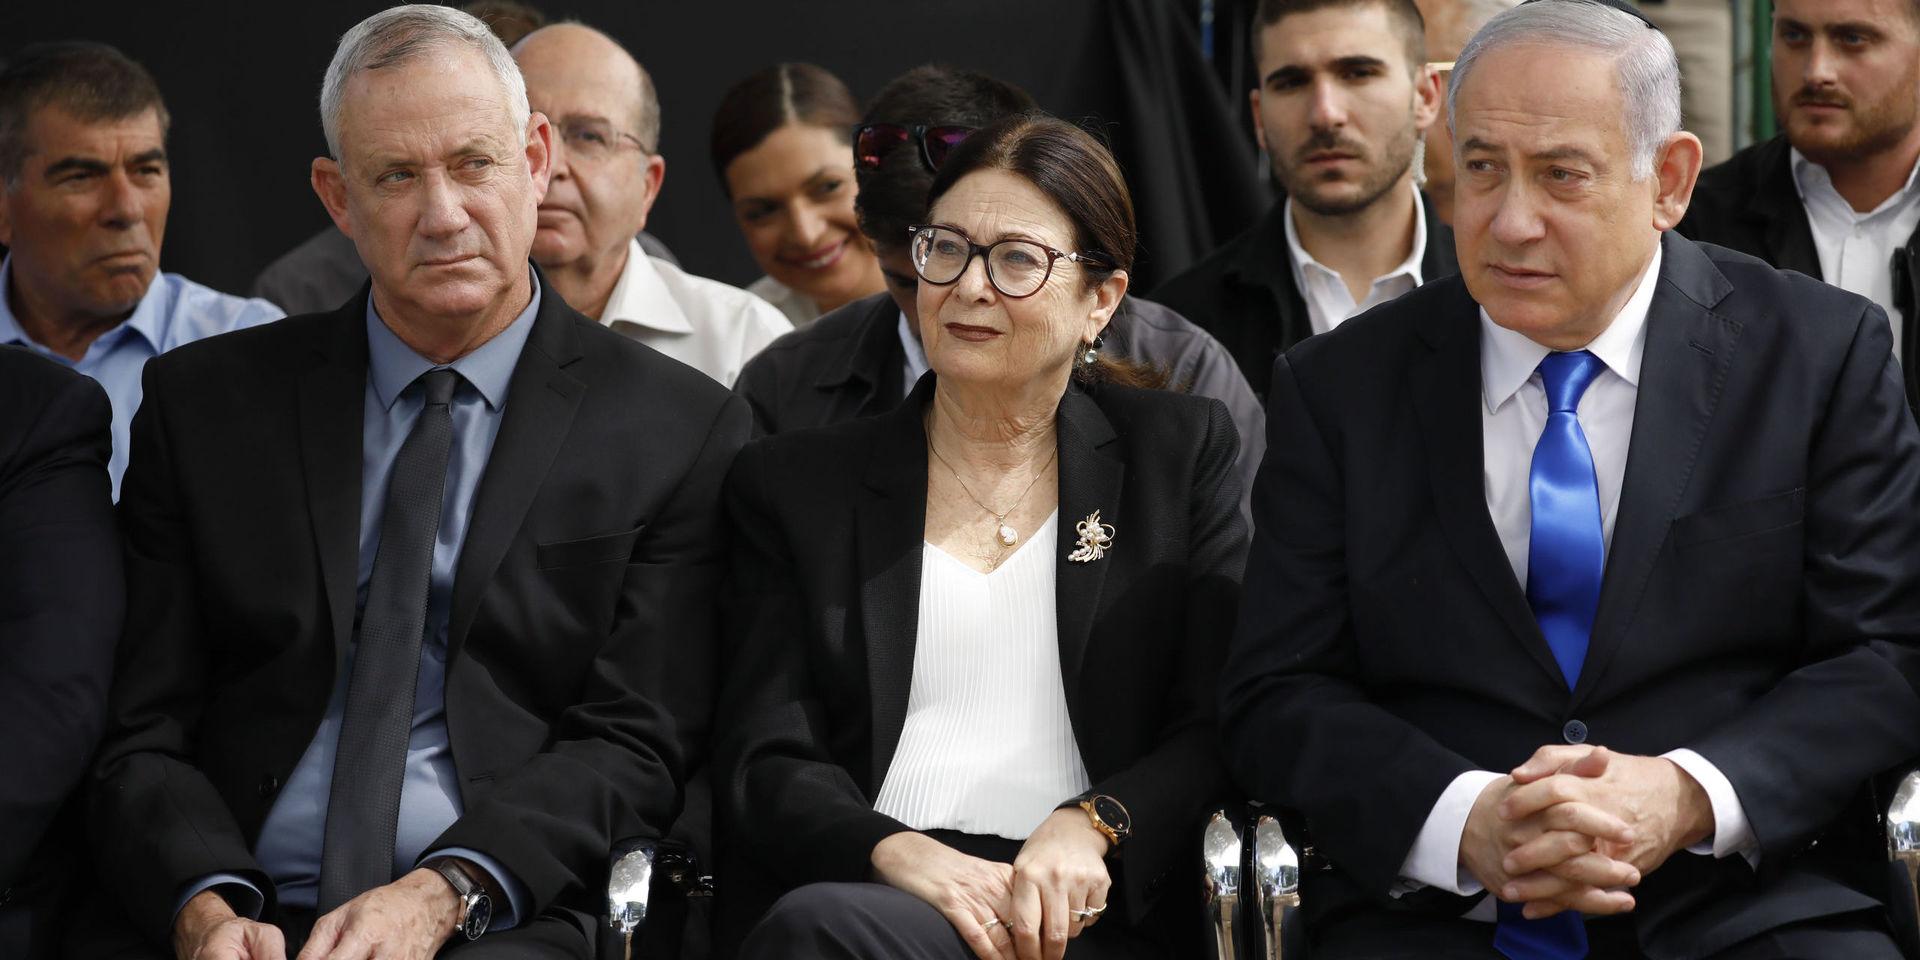 Benny Gantz till vänster och premiärminister Benjamin Netanyahu till höger med Esther Hayut, chefsdomare i Israels högsta domstol, emellan sig. 